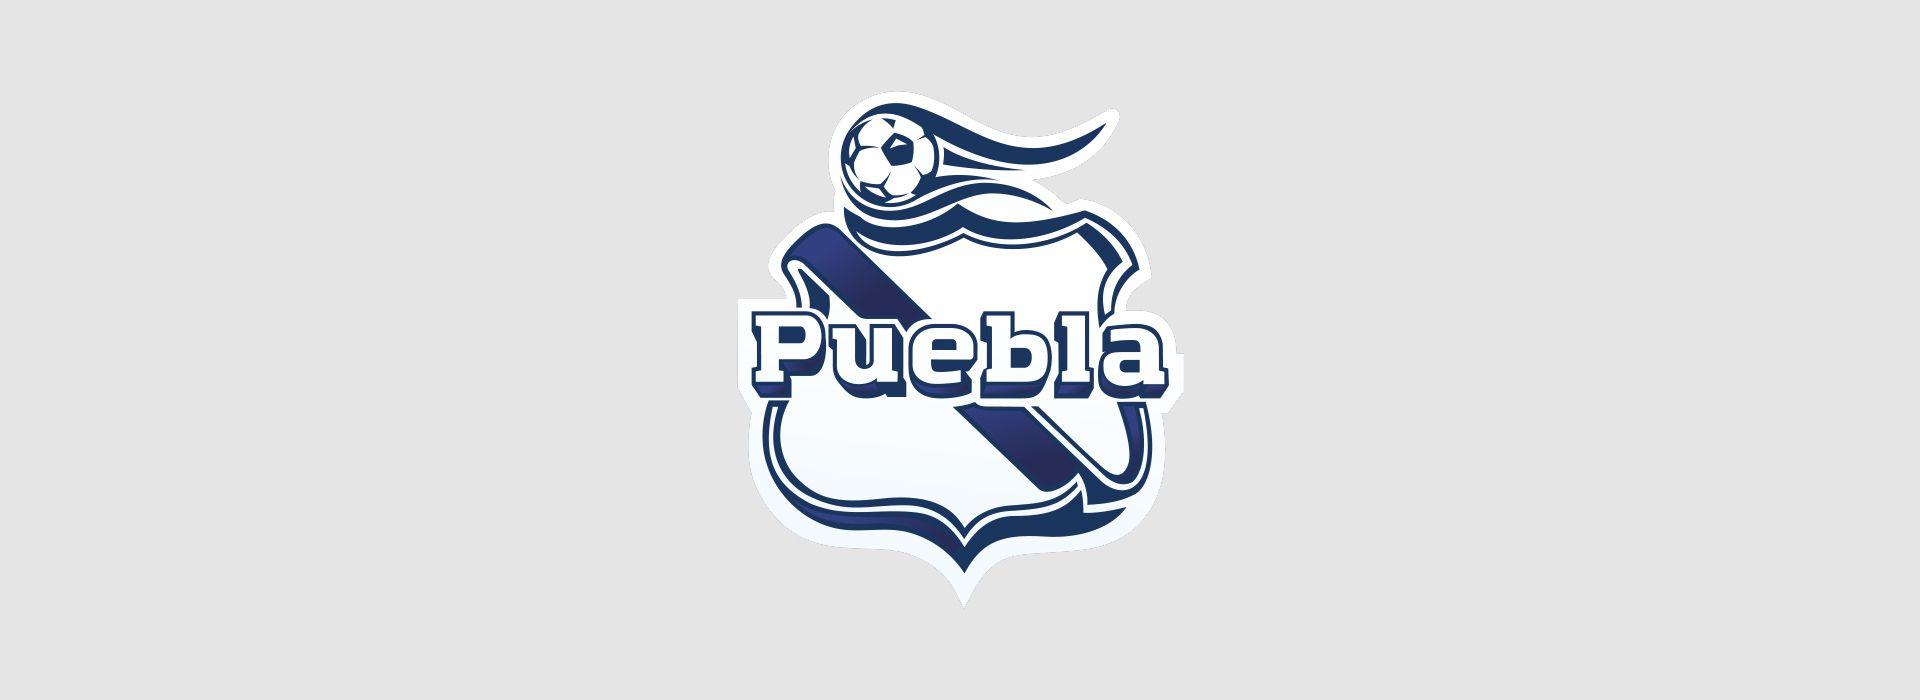 Puebla Logo - ClubPuebla.com